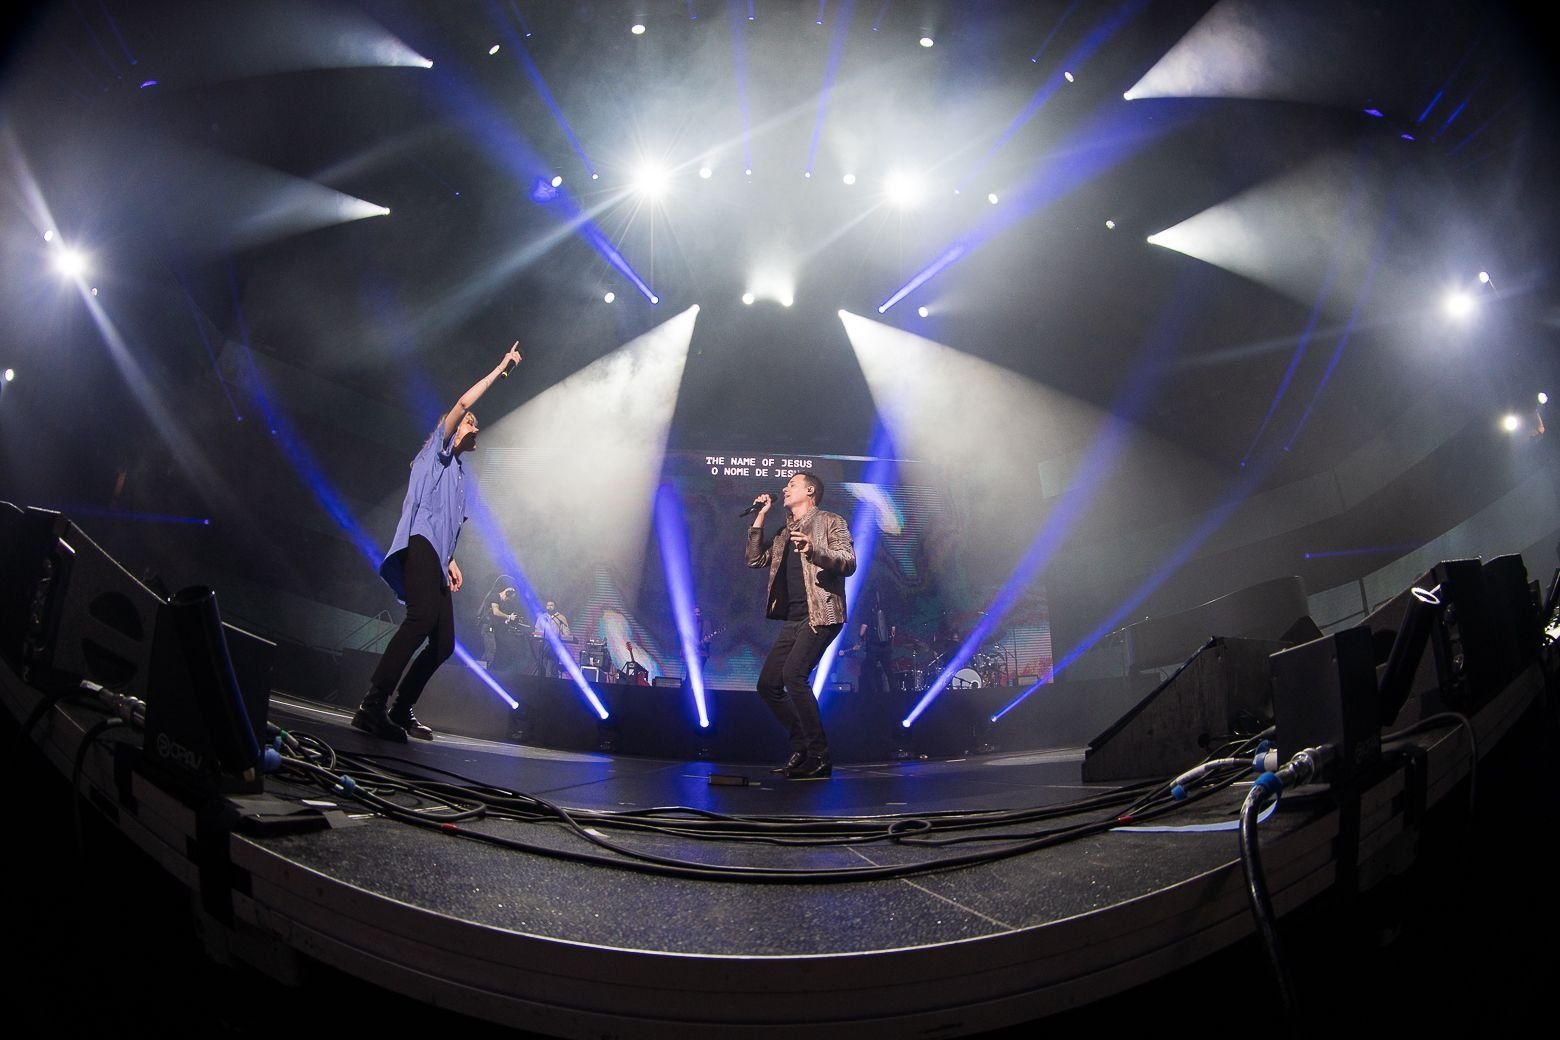 Taya e André Valadão cantam juntos “What A Beautiful Name” em arena nos EUA